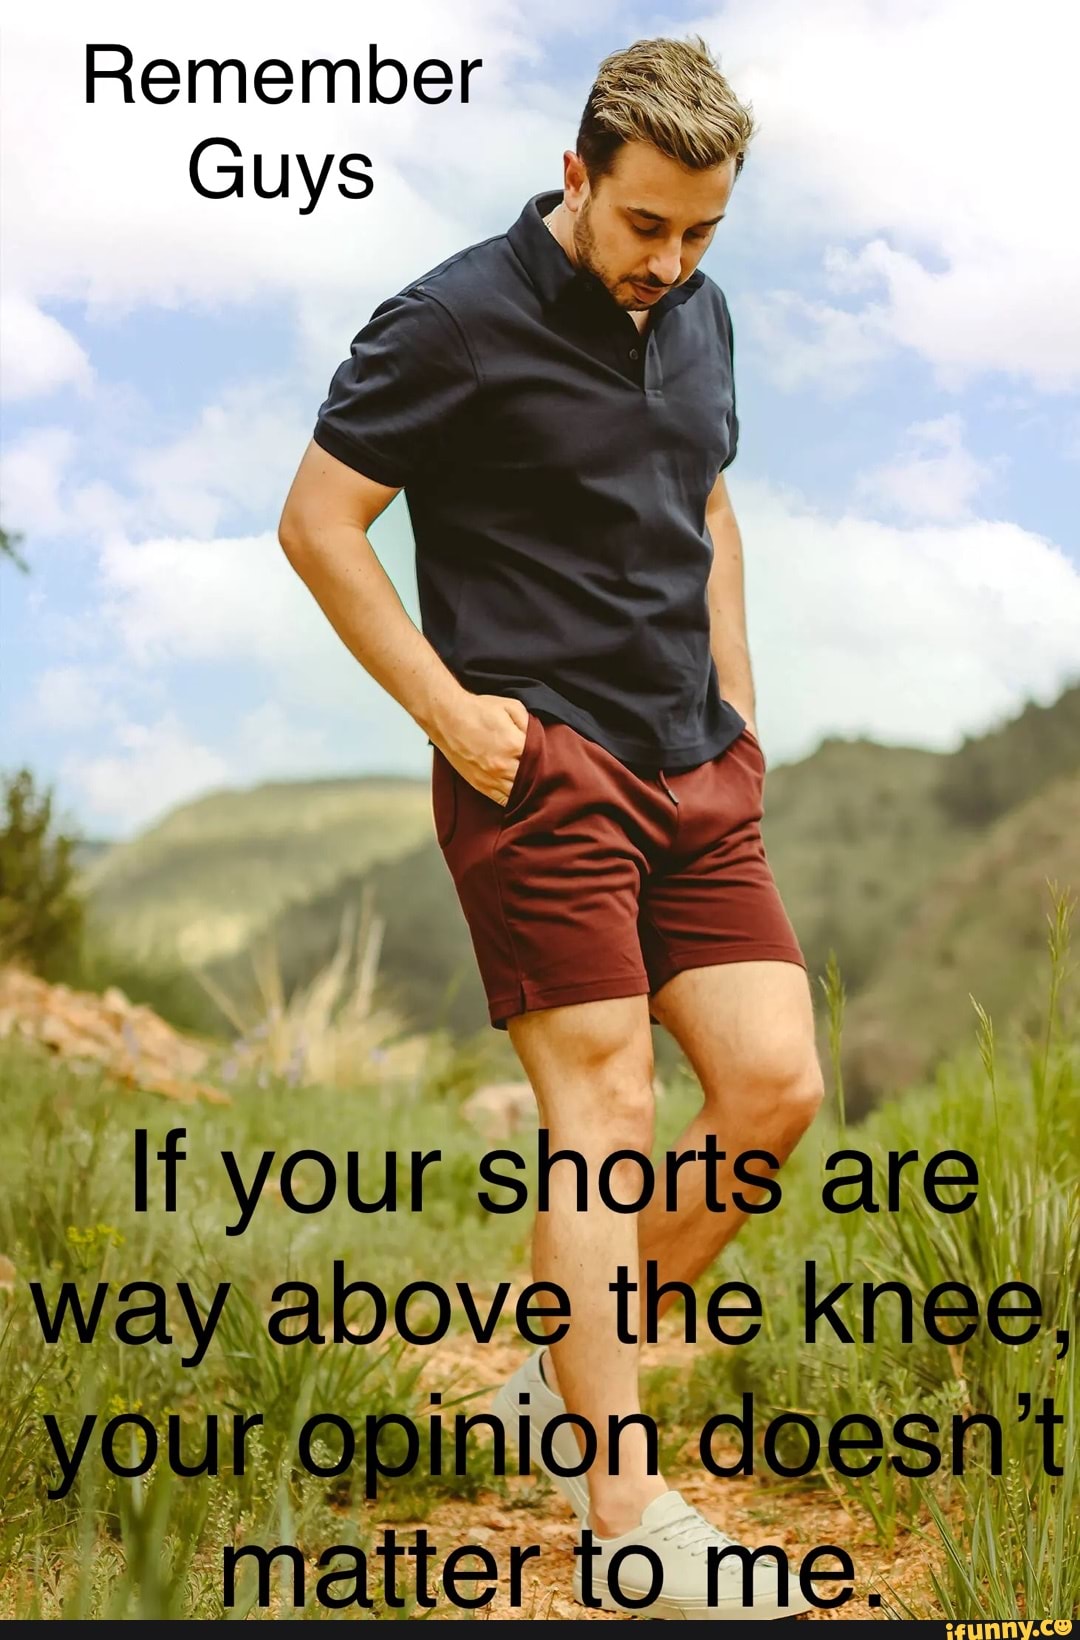 memes em imagens #188 Foto levemente rara #shorts